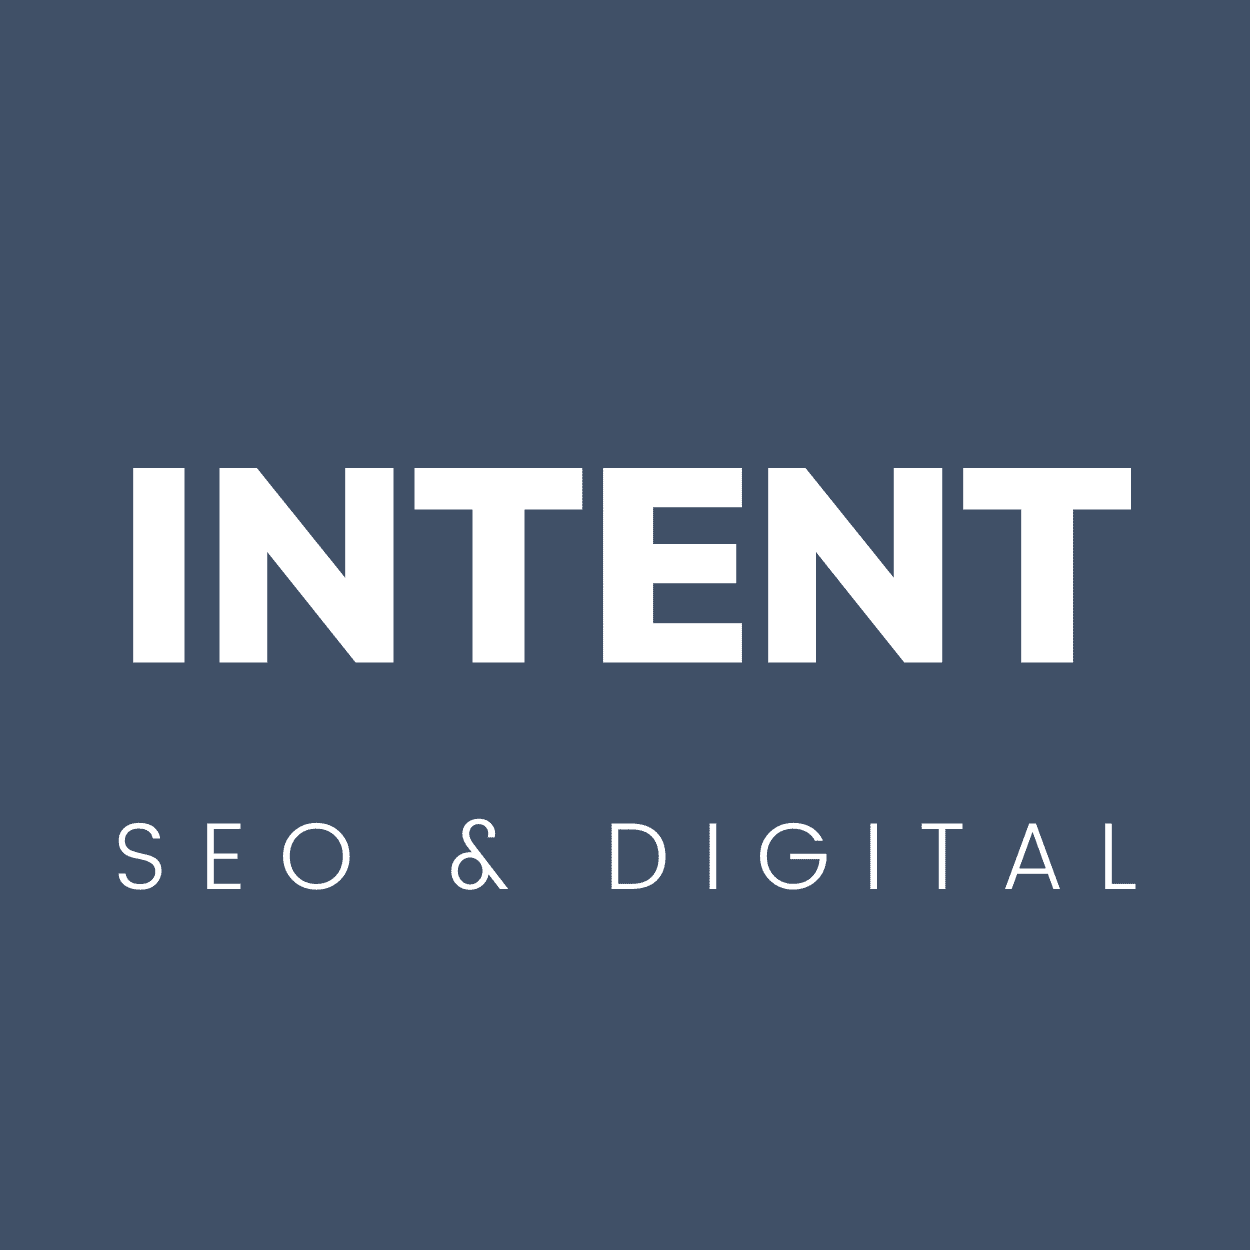 Intent_seo_og_digital